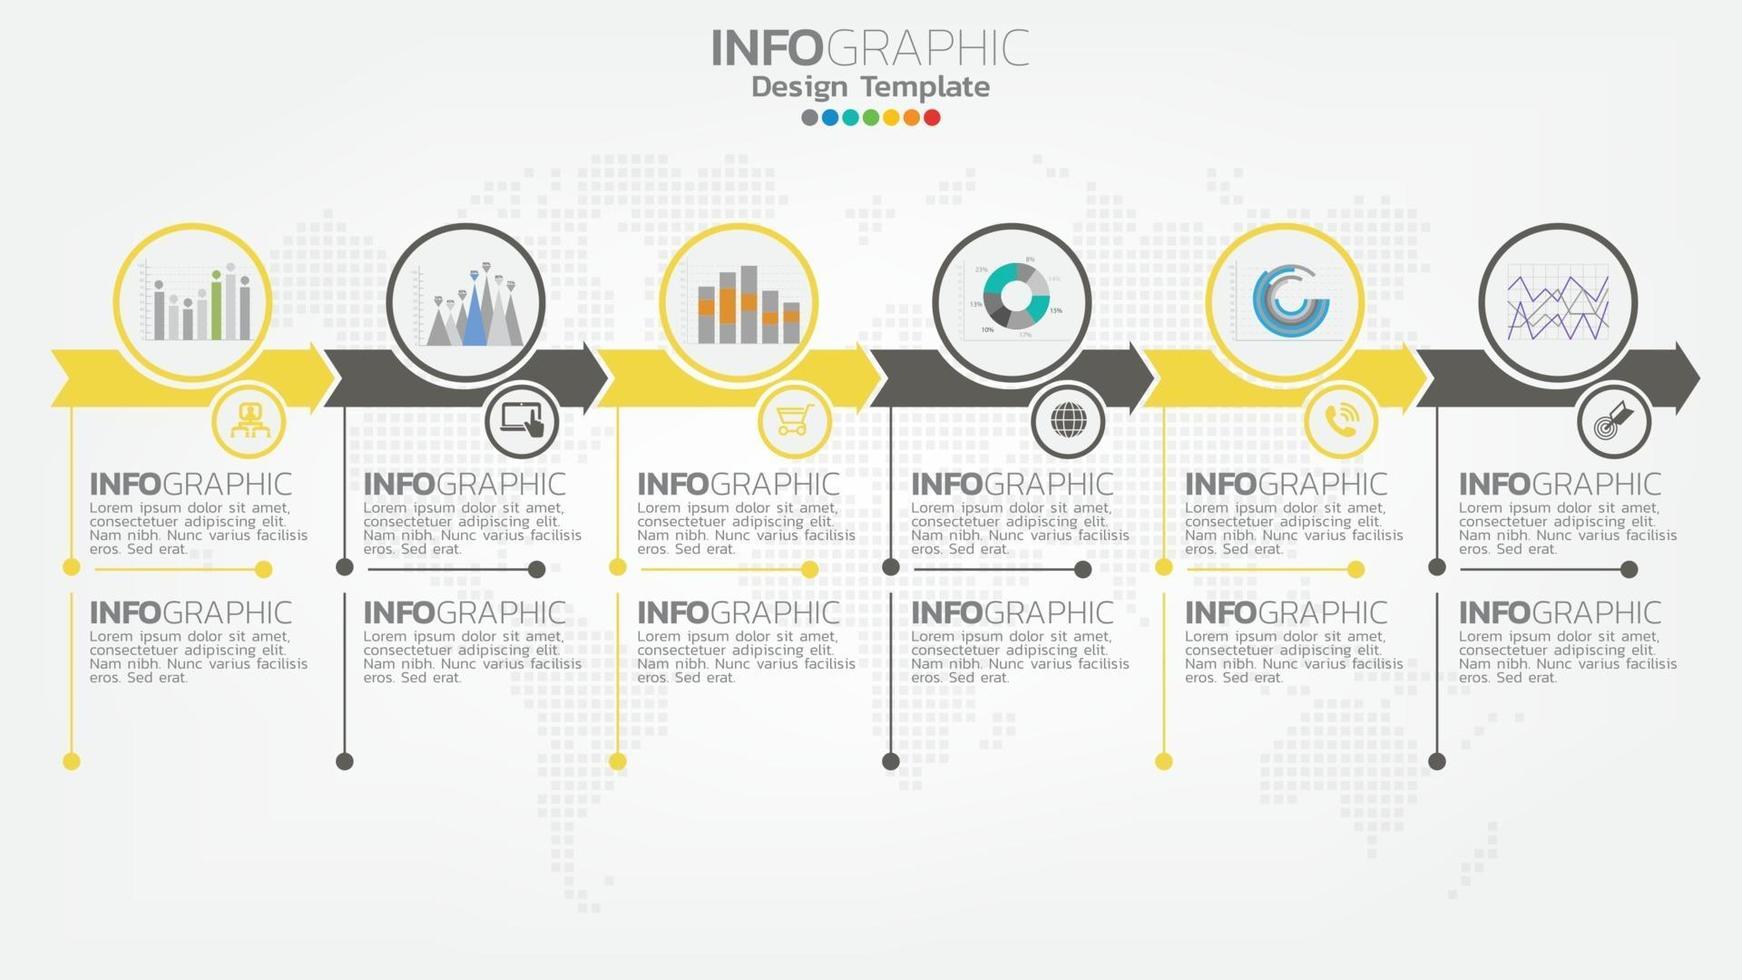 Infograph 6 Schritt gelbes Farbelement mit Pfeil, Diagrammdiagramm, Geschäfts-Online-Marketingkonzept. vektor